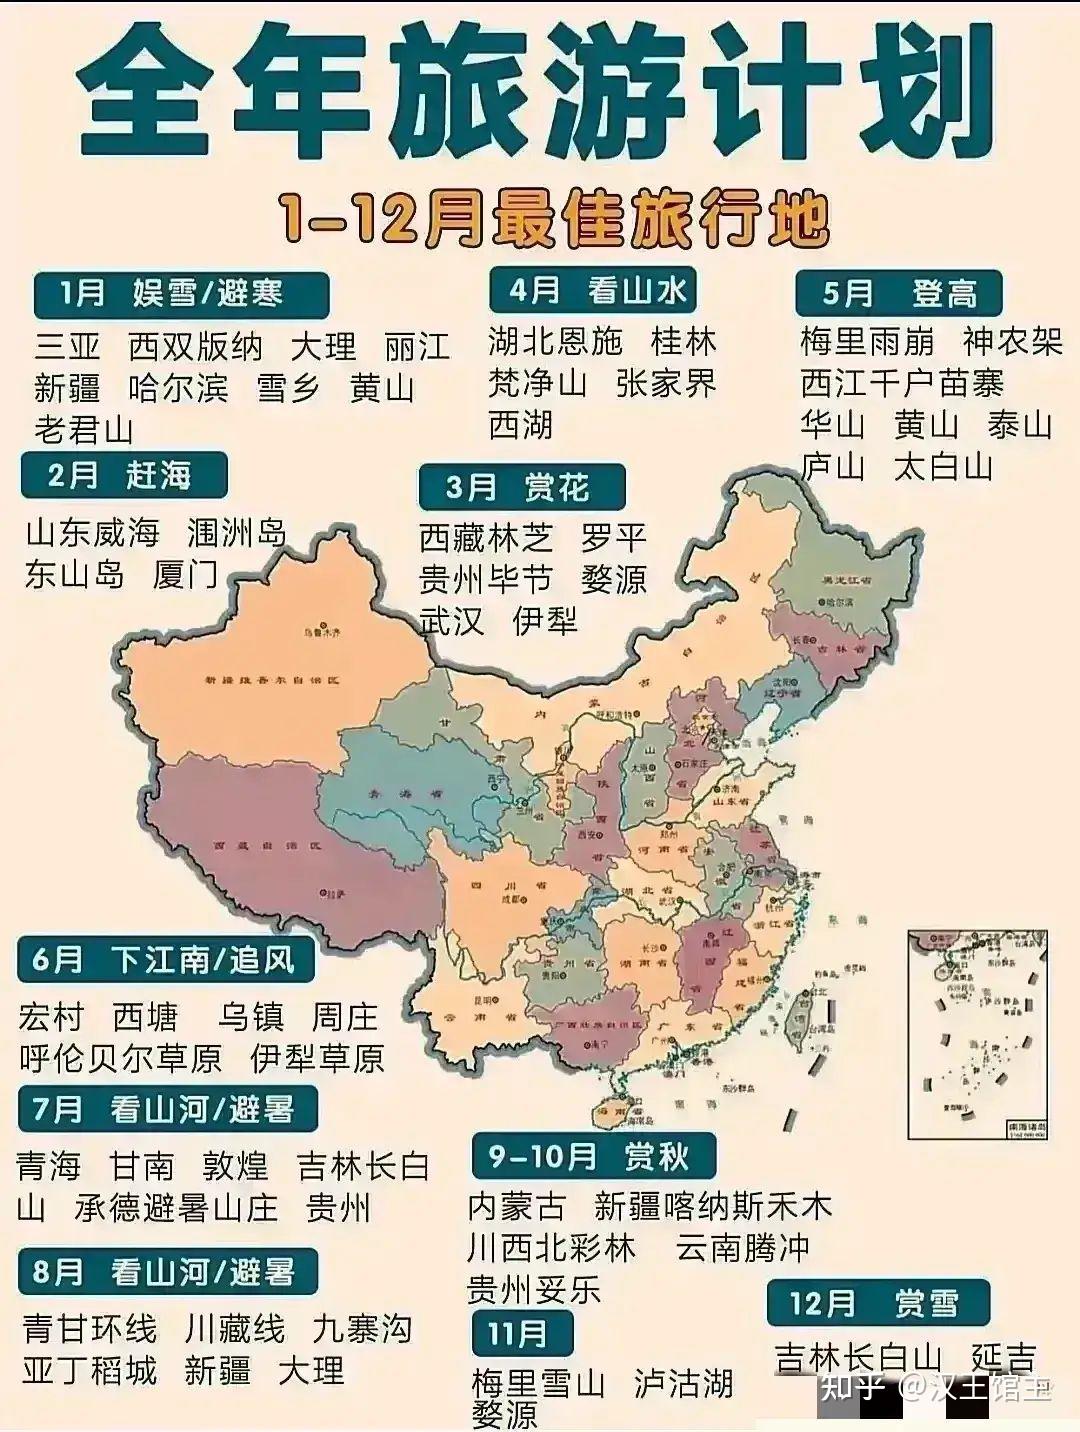 中国已有57项世界文化和自然遗产列入《世界遗产名录》,其中世界文化